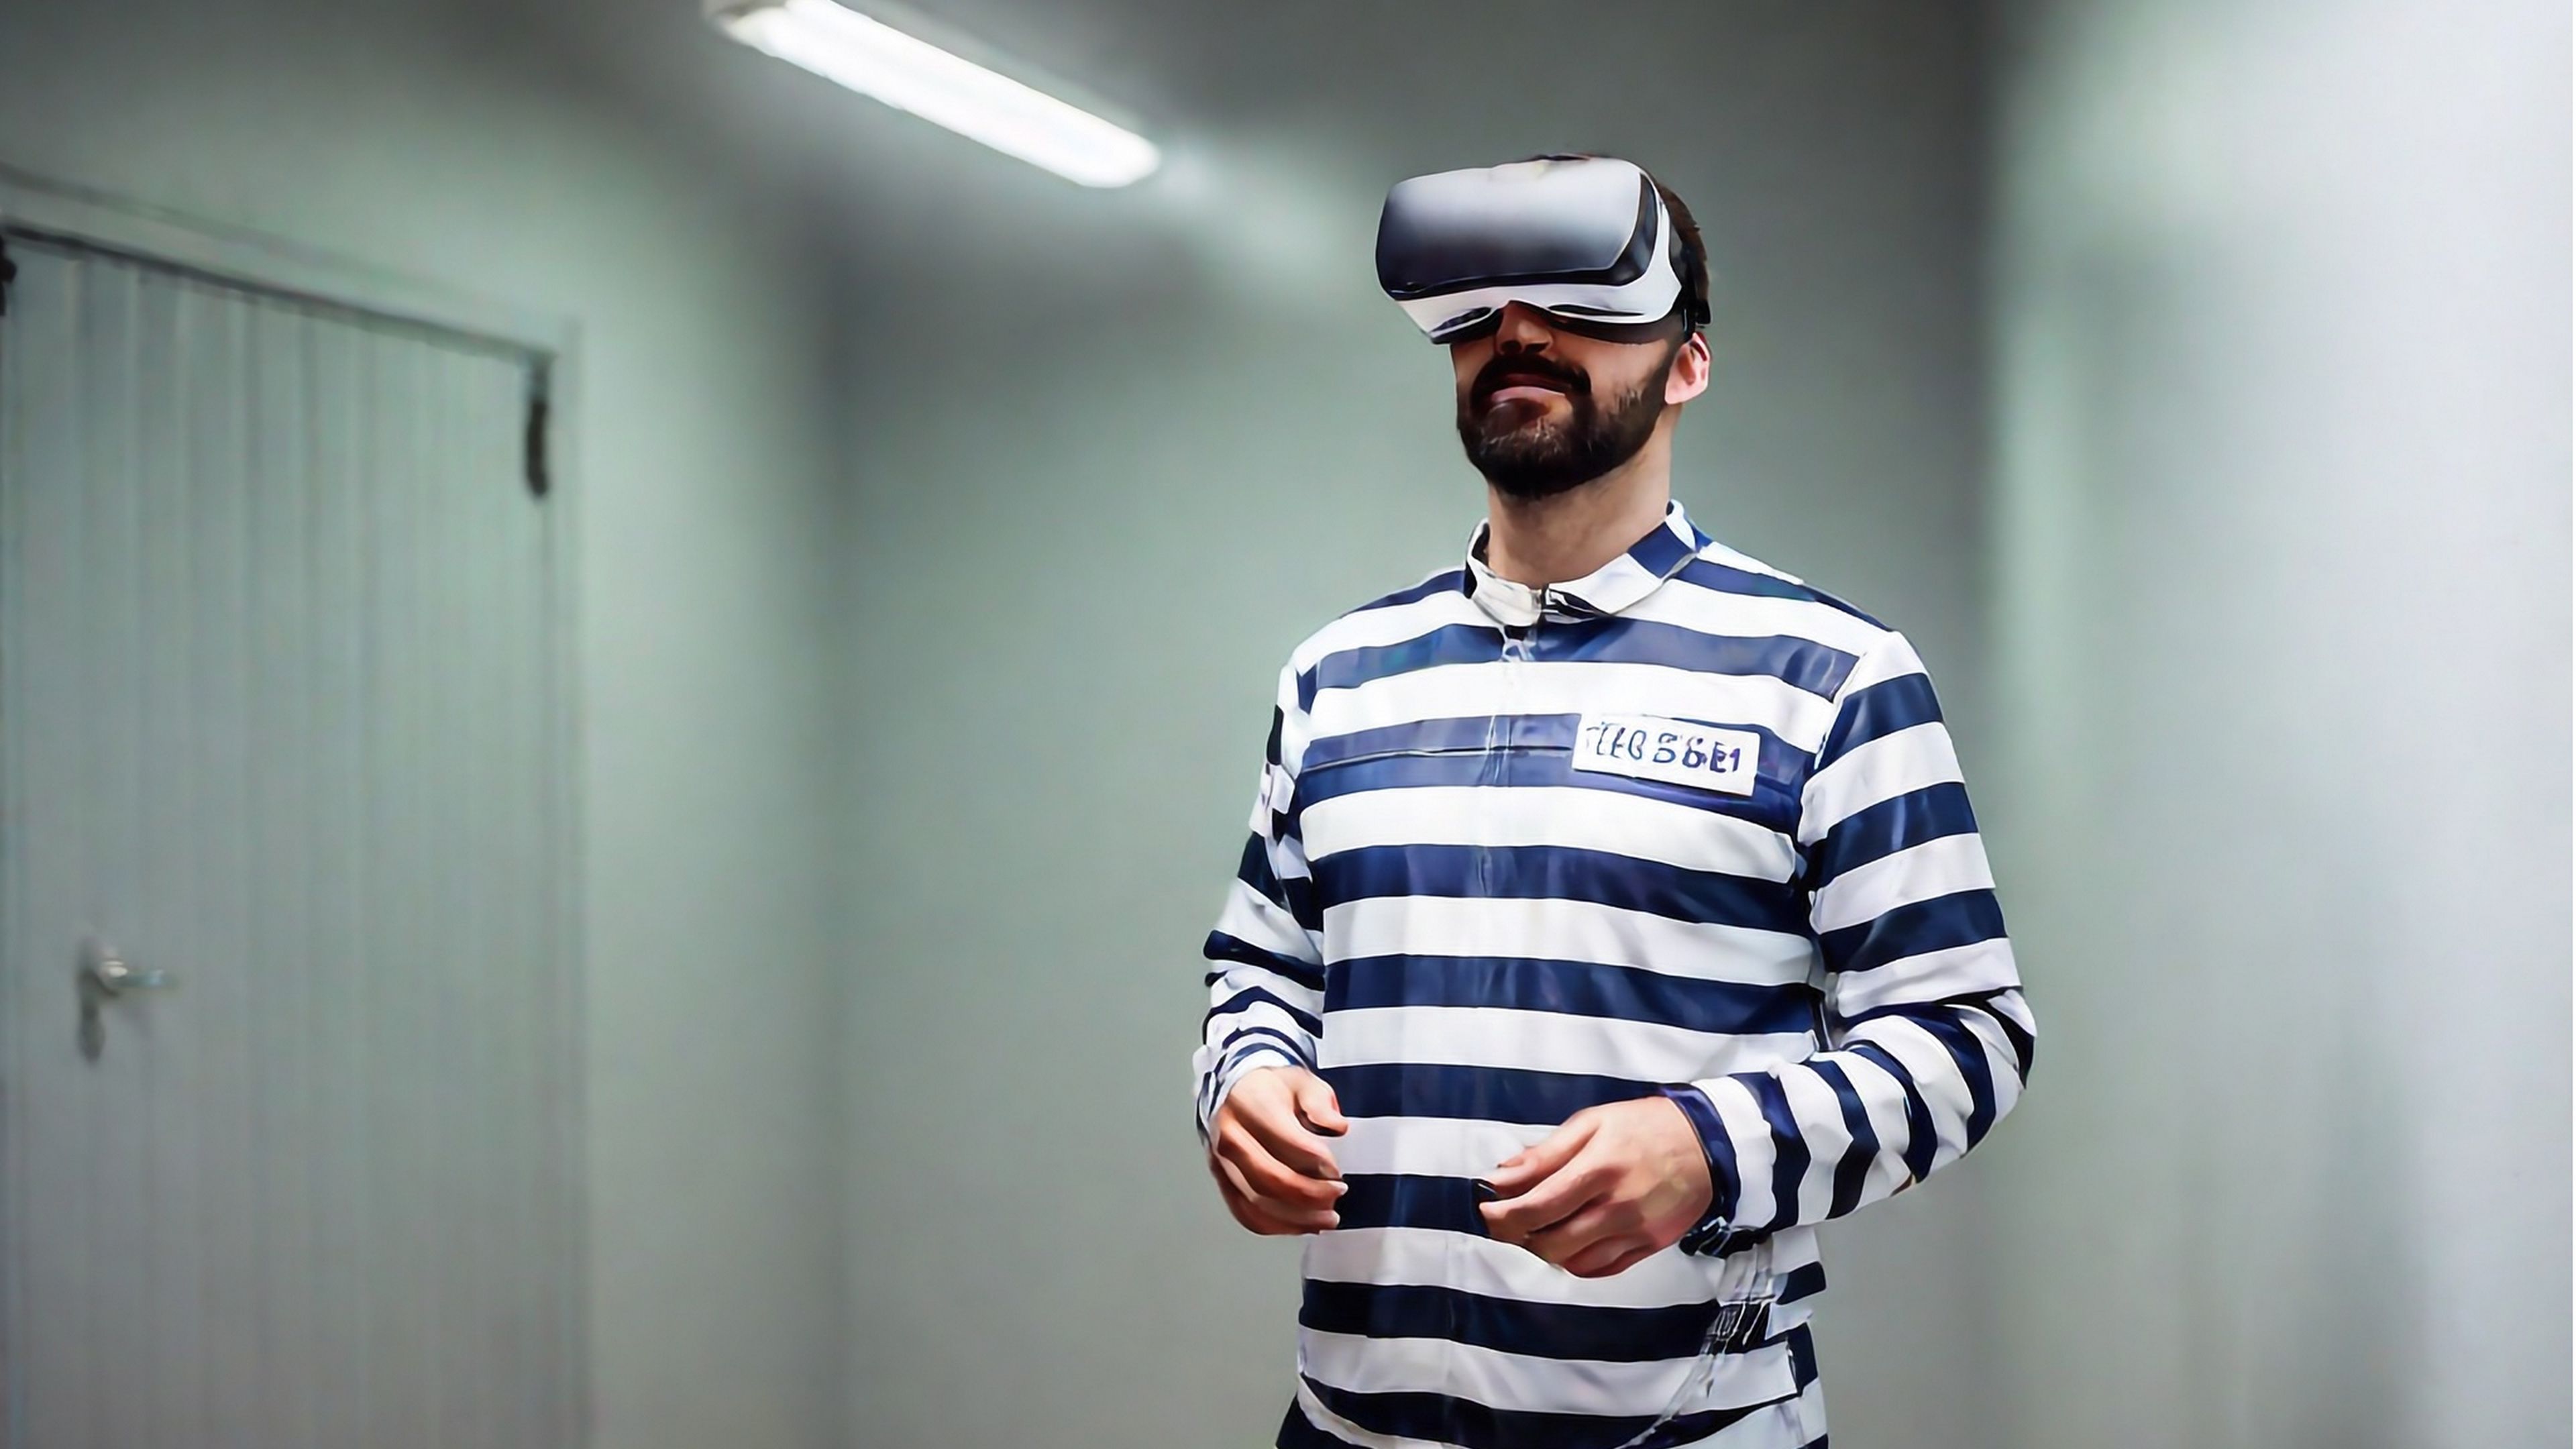 Reclusos de una prisión van a usar la realidad virtual para trabajar fuera de la cárcel